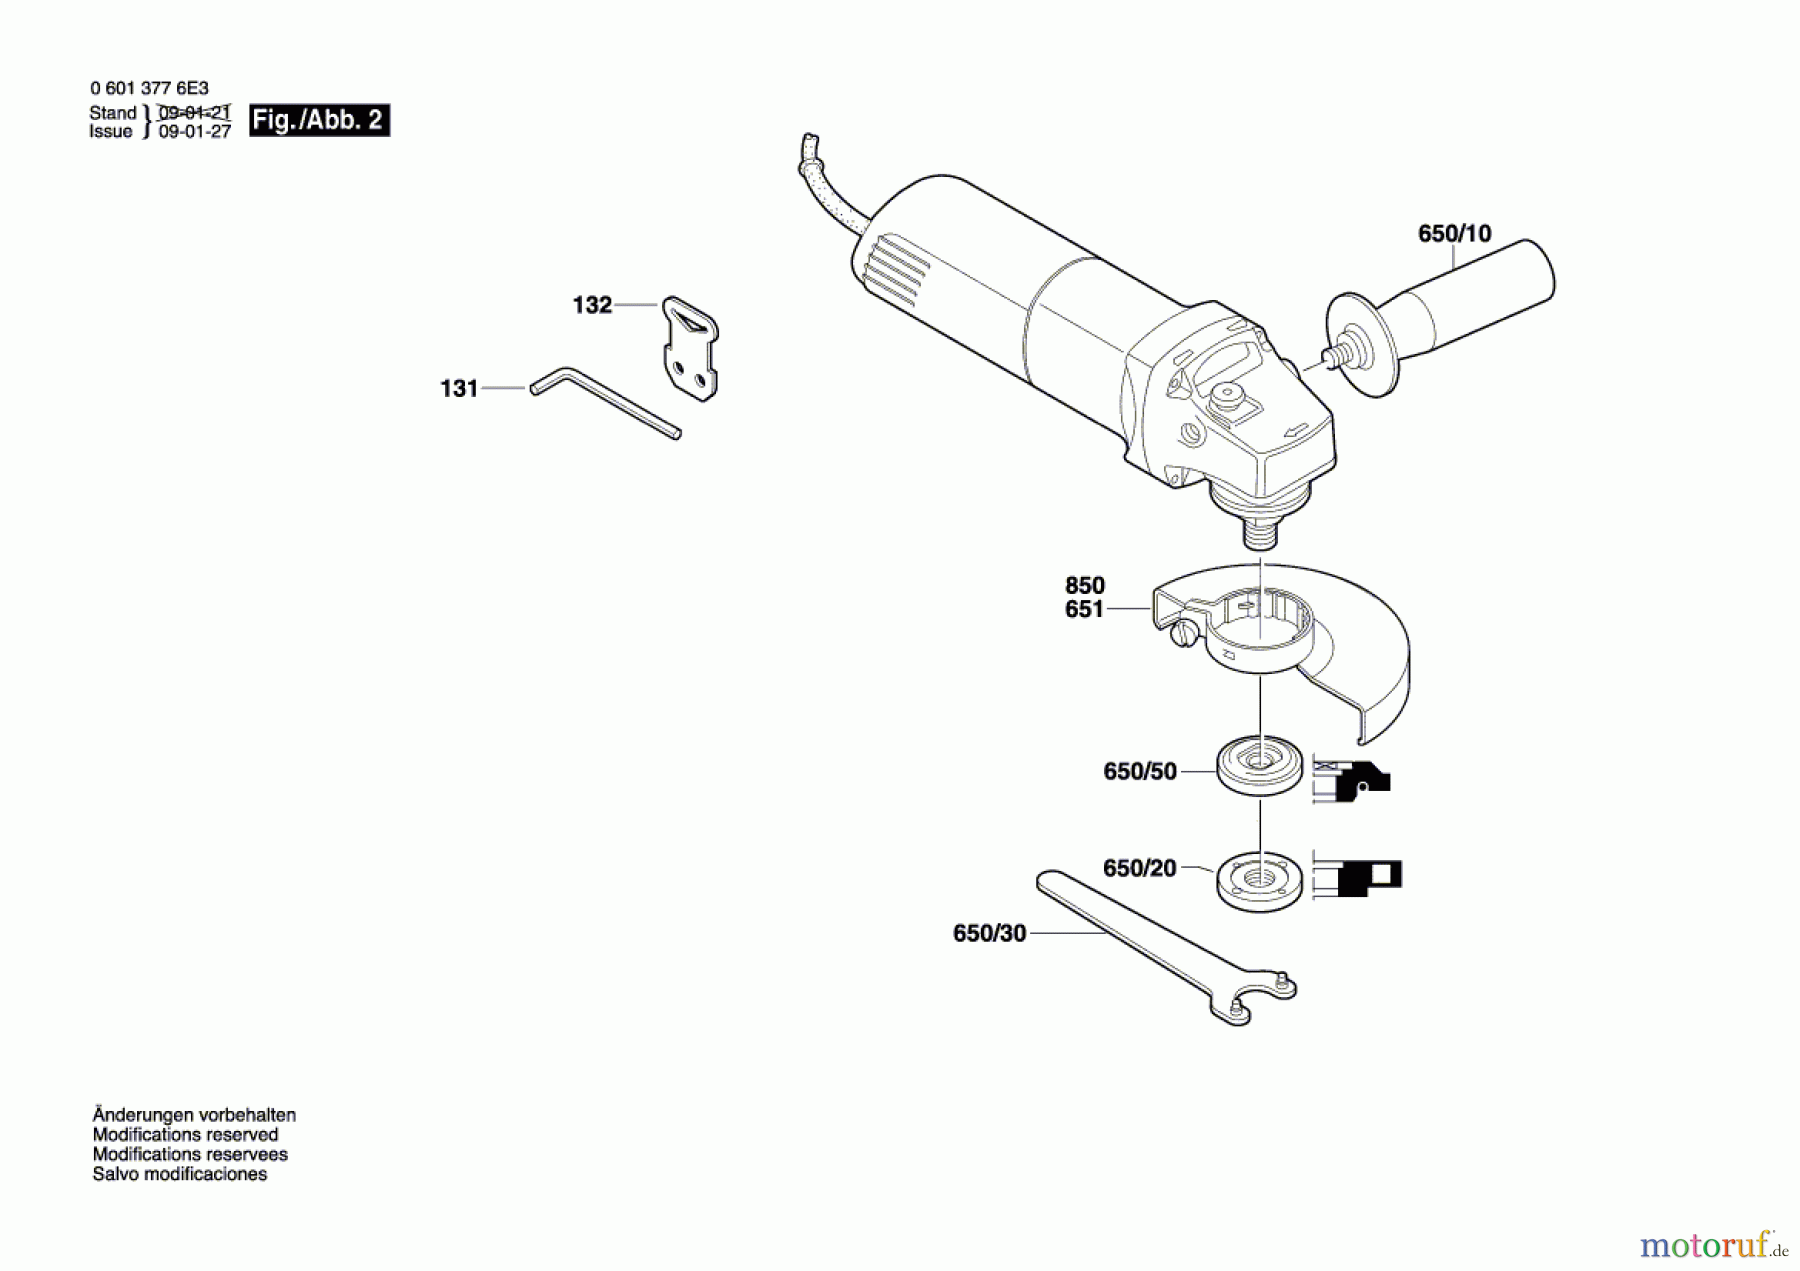  Bosch Werkzeug Winkelschleifer GWS 8-100 CE Seite 2